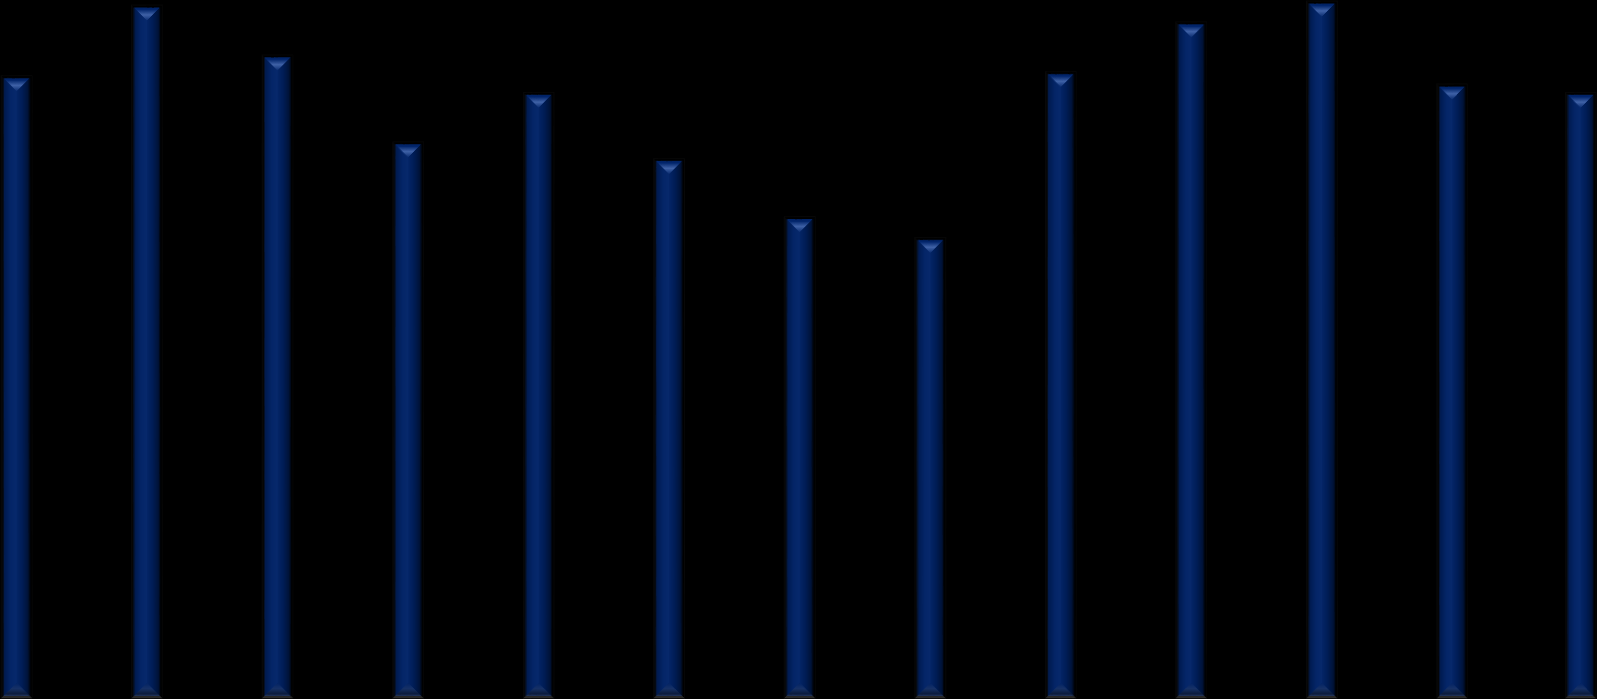 Cena v Kč/kg 9 Průběh ročníku 2014 Průměrná cena hroznů 15,70 Kč/kg; bílé 16,20 Kč/kg; modré 14,60 Kč/kg Průměrná cena